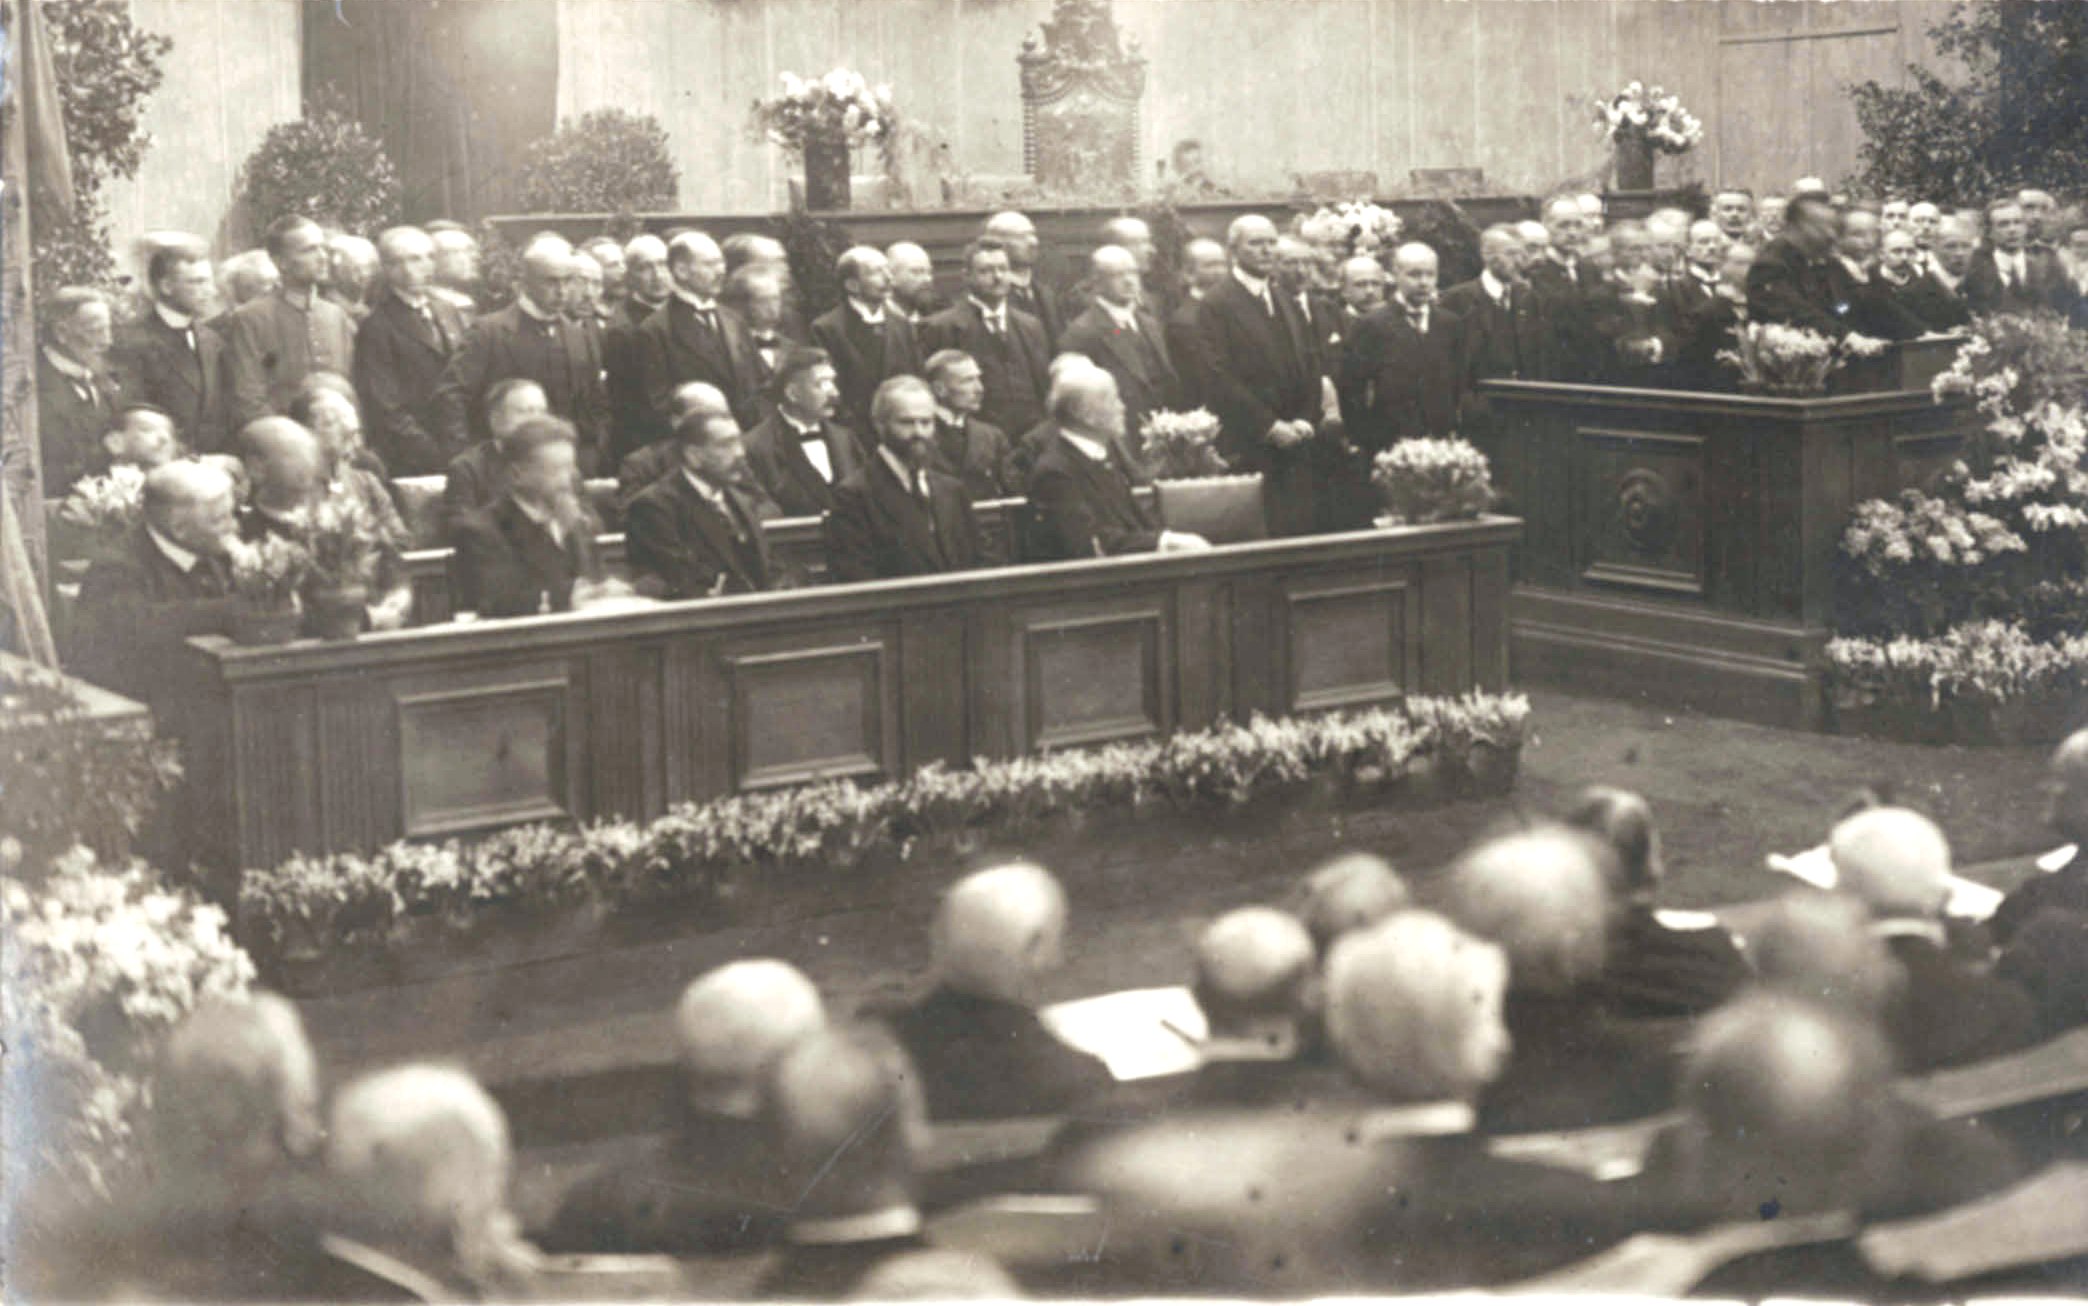 Eröffnung der Nationalversammlung in Weimar 1919